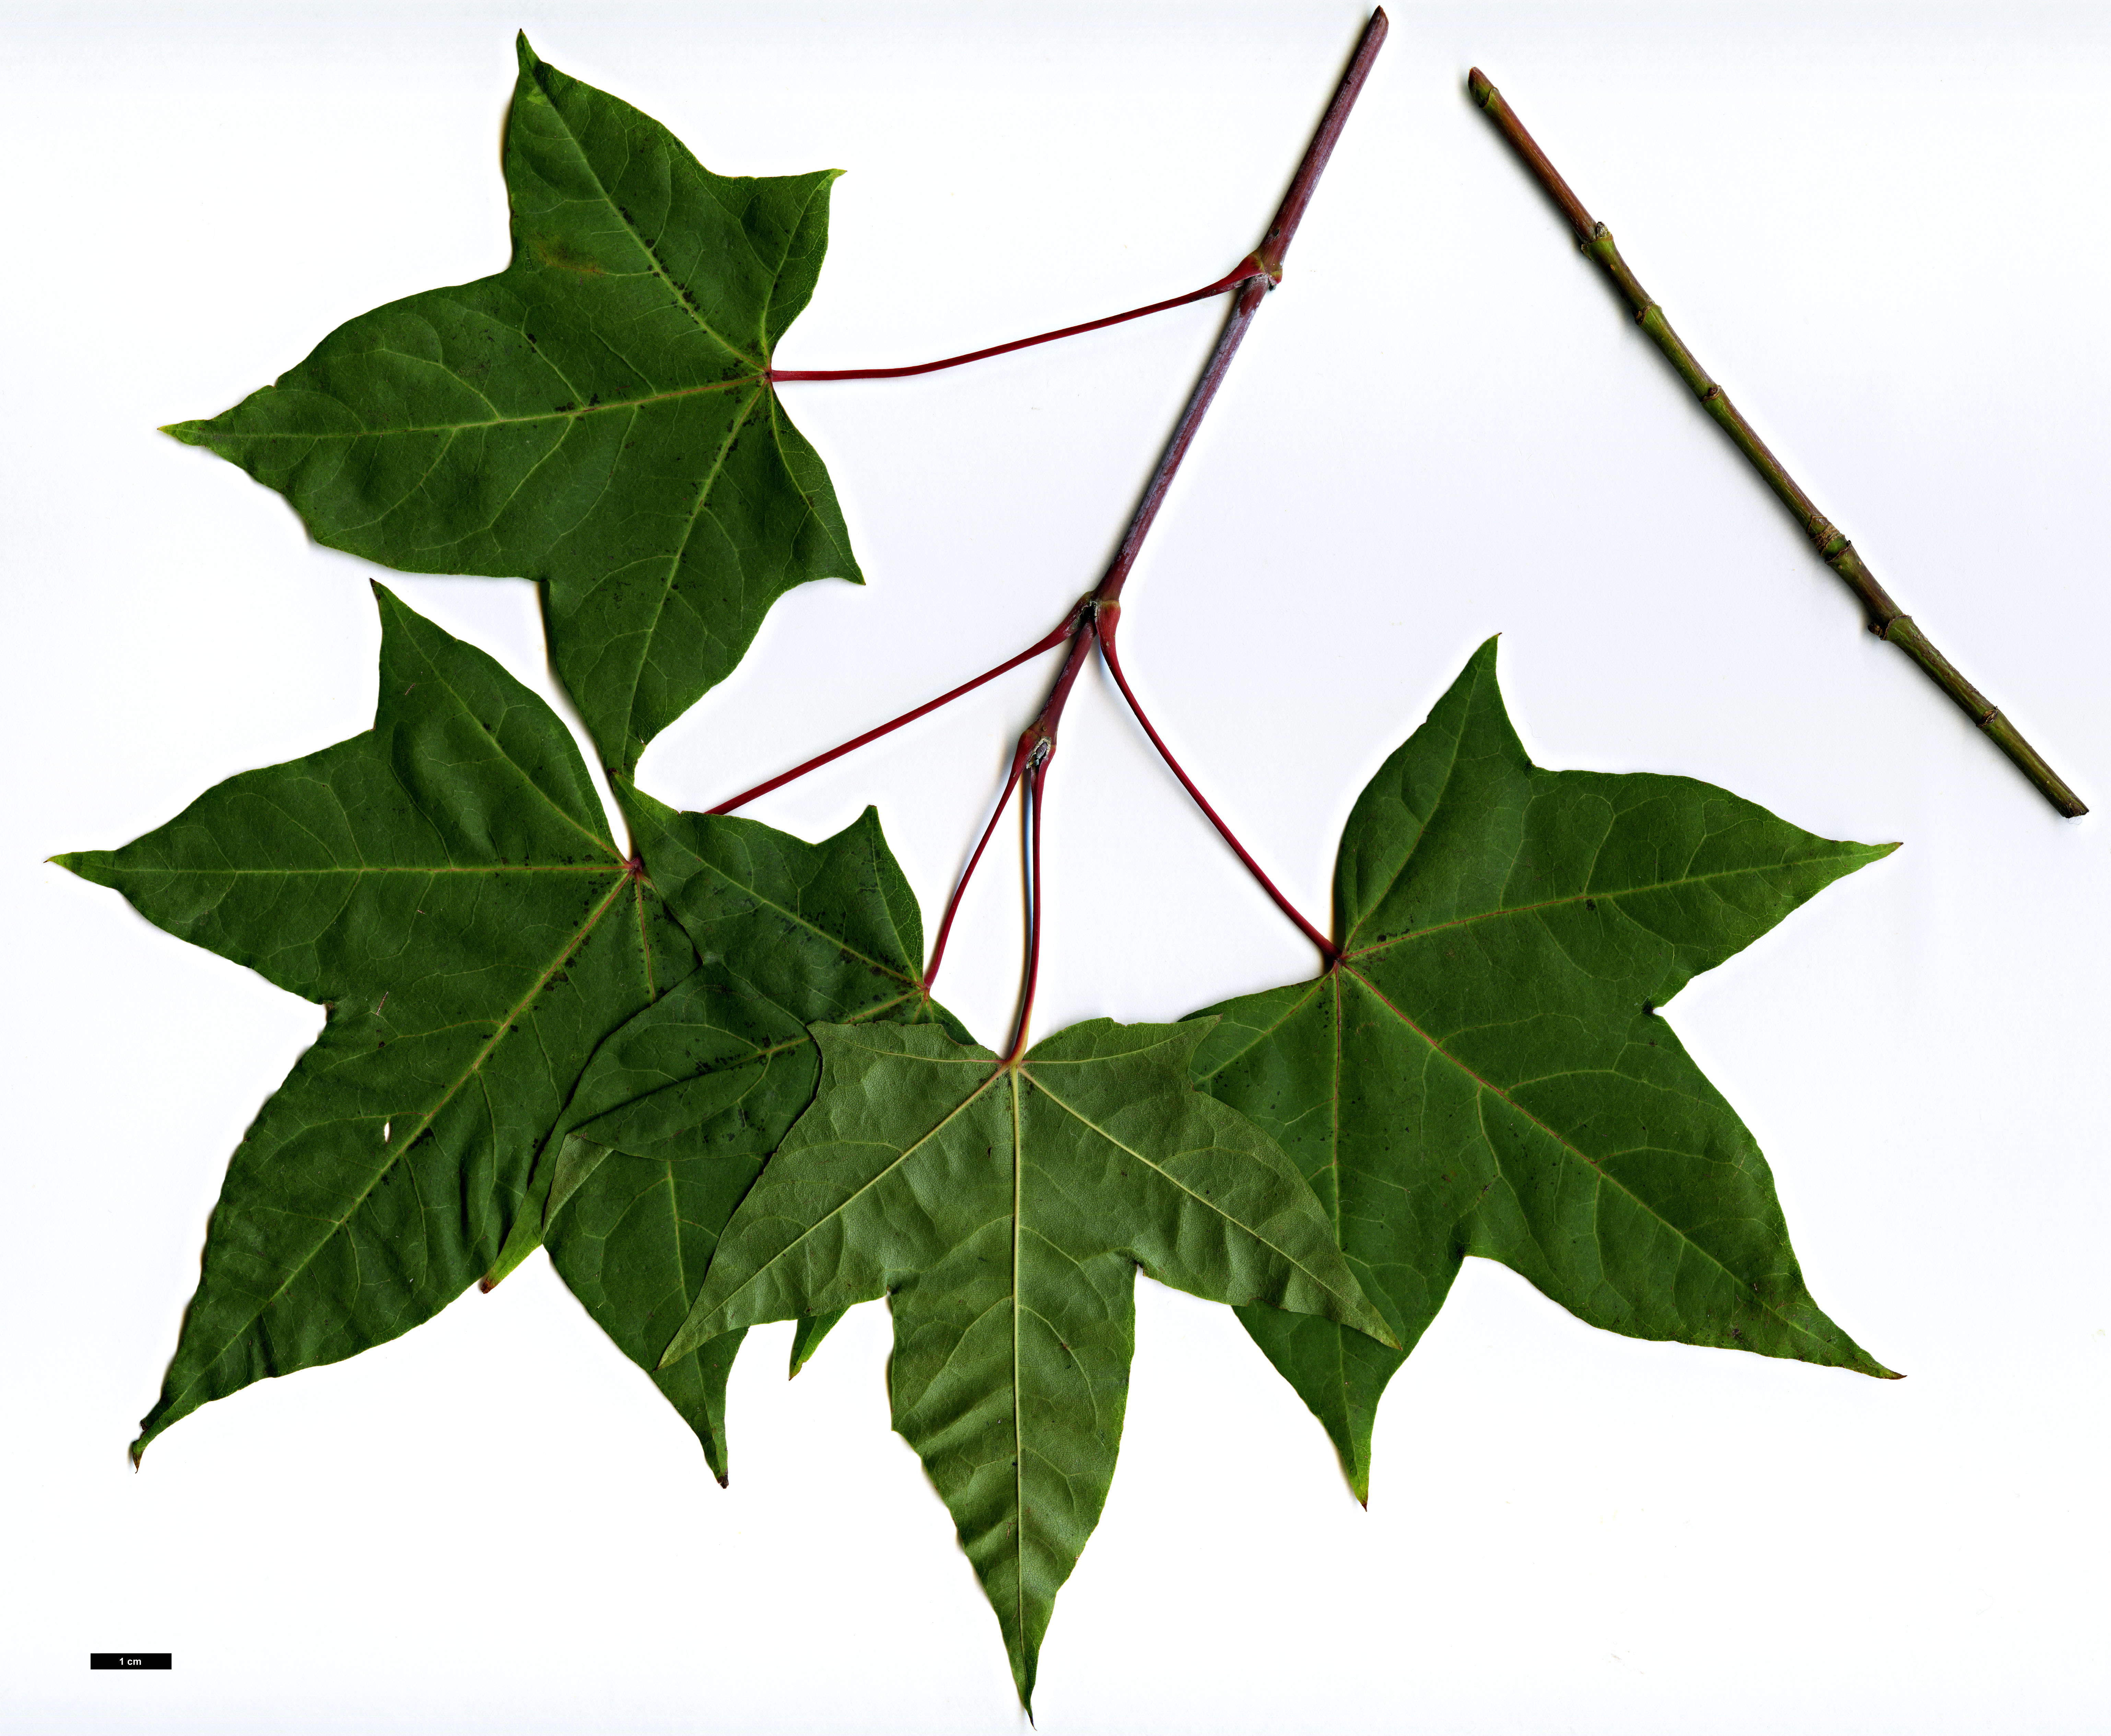 High resolution image: Family: Sapindaceae - Genus: Acer - Taxon: cappadocicum - SpeciesSub: subsp. sinicum